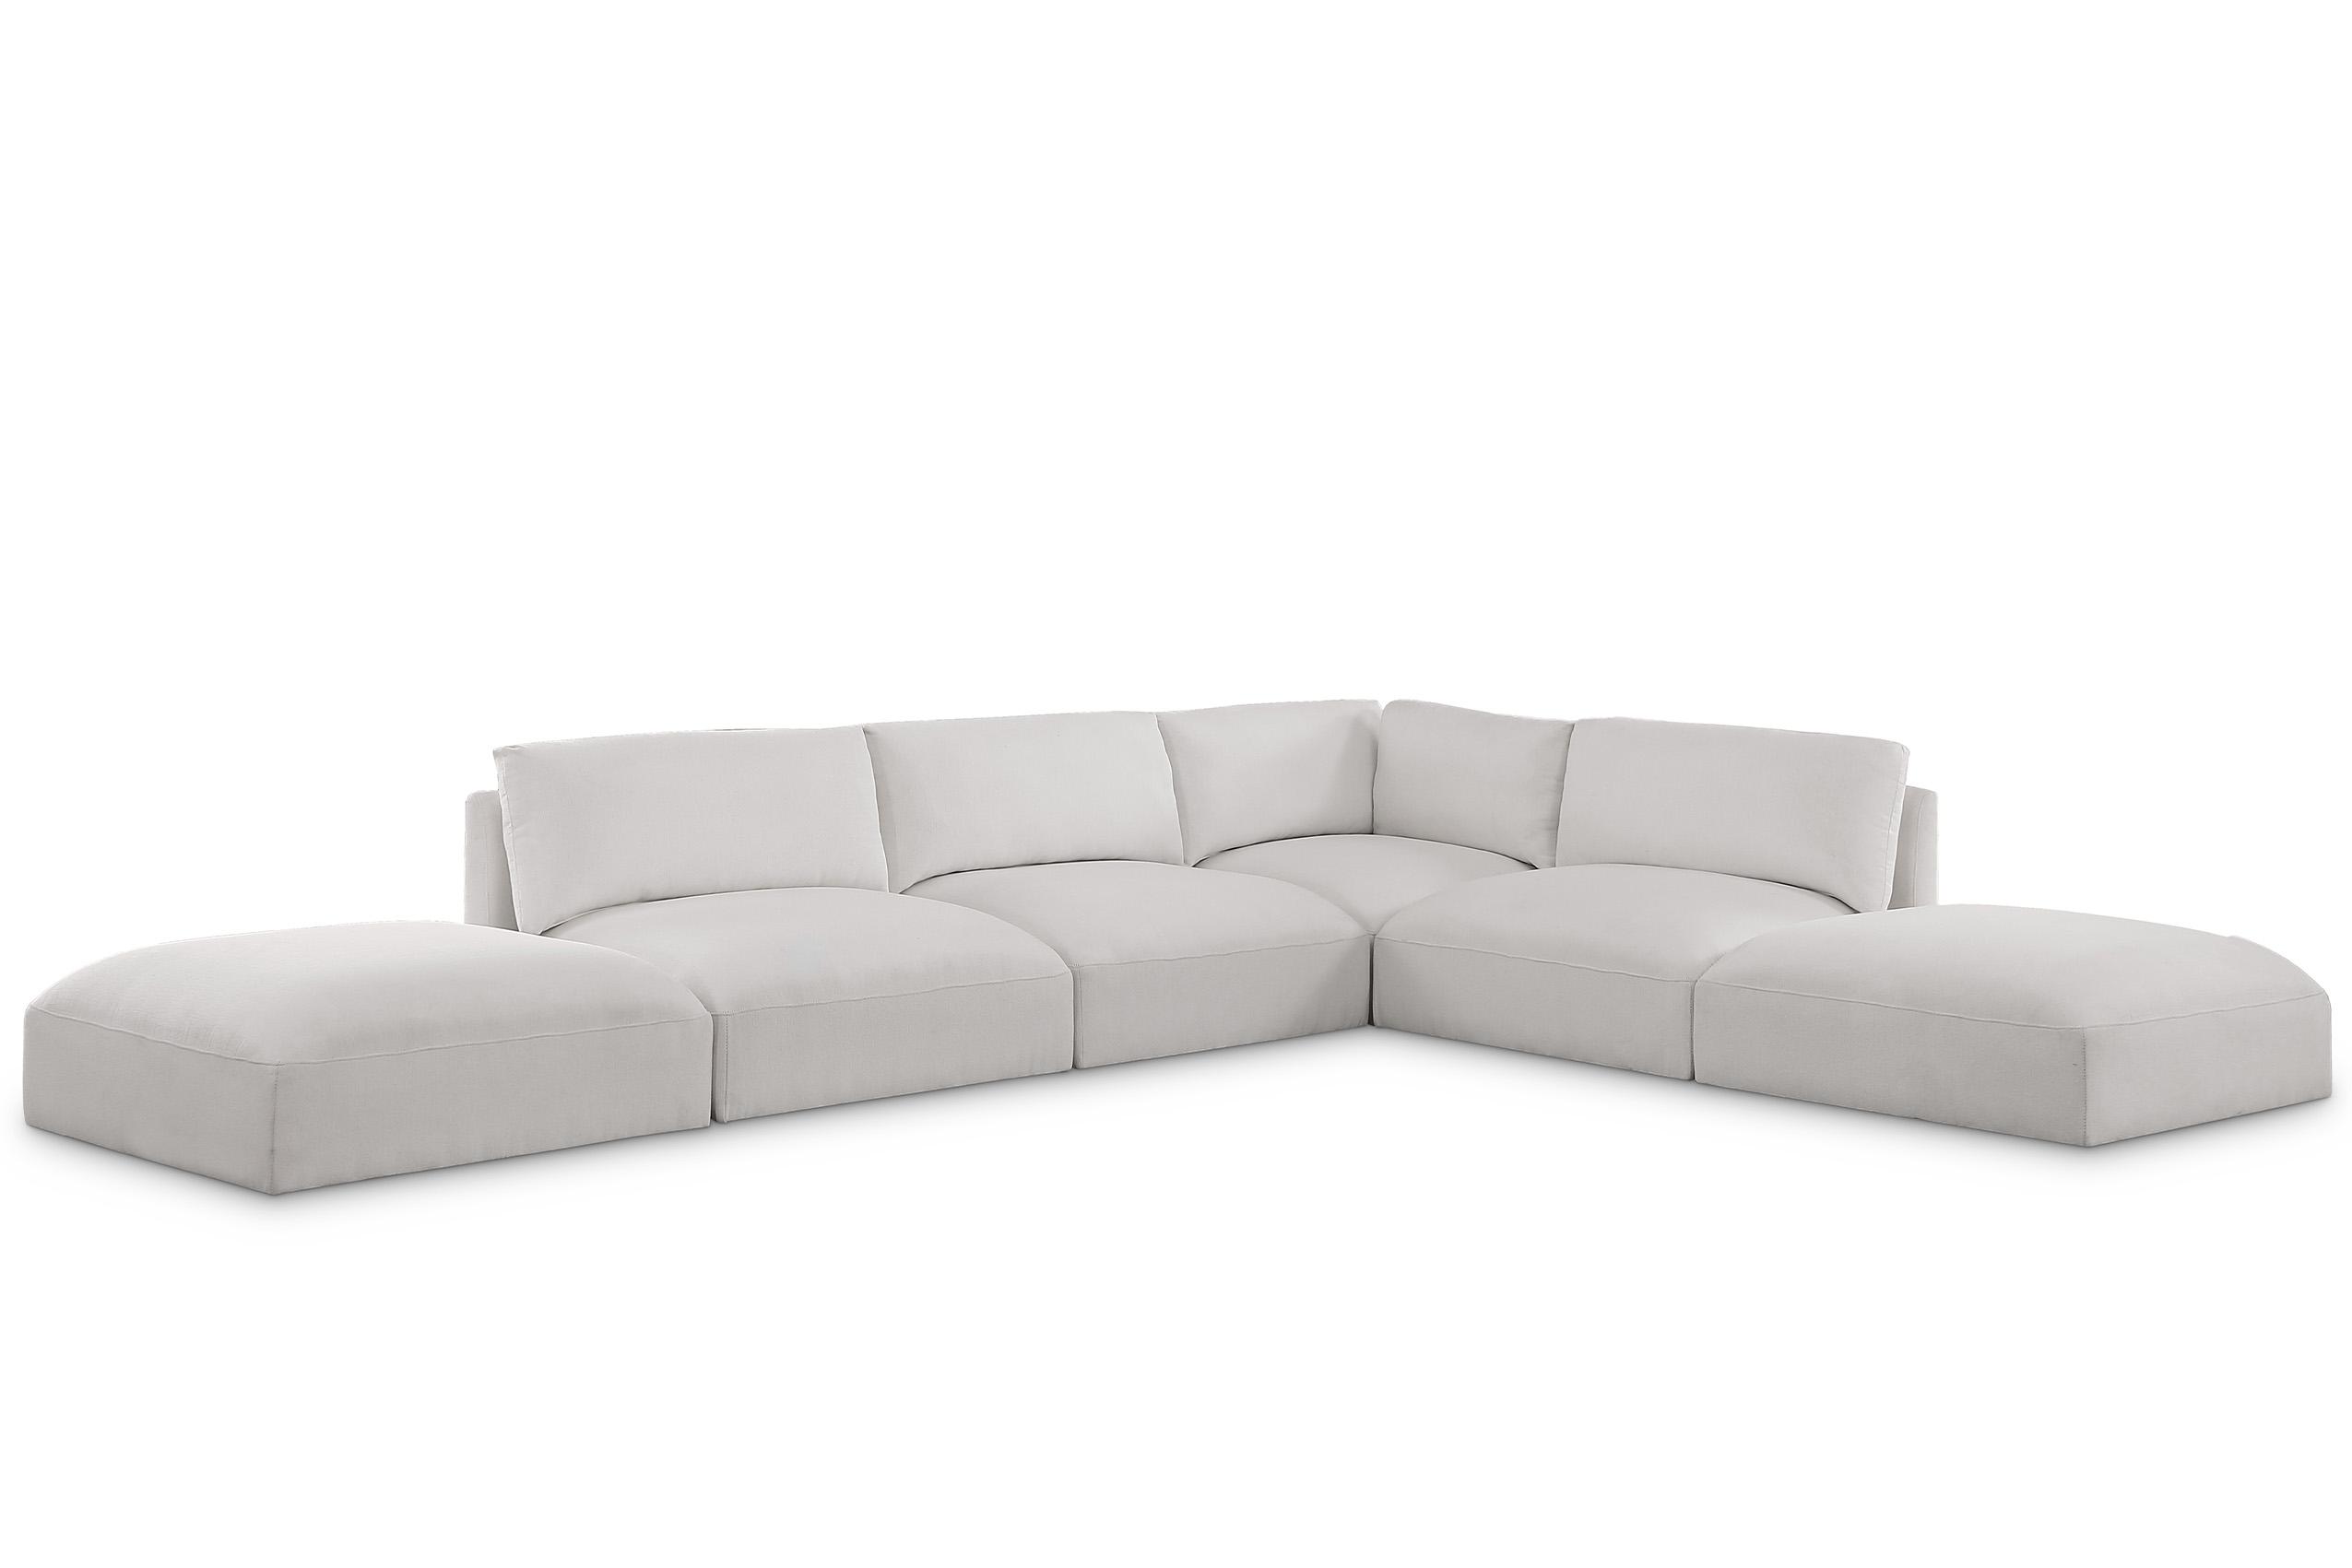 Contemporary, Modern Modular Sectional Sofa EASE  696Cream-Sec6E 696Cream-Sec6E in Cream Fabric